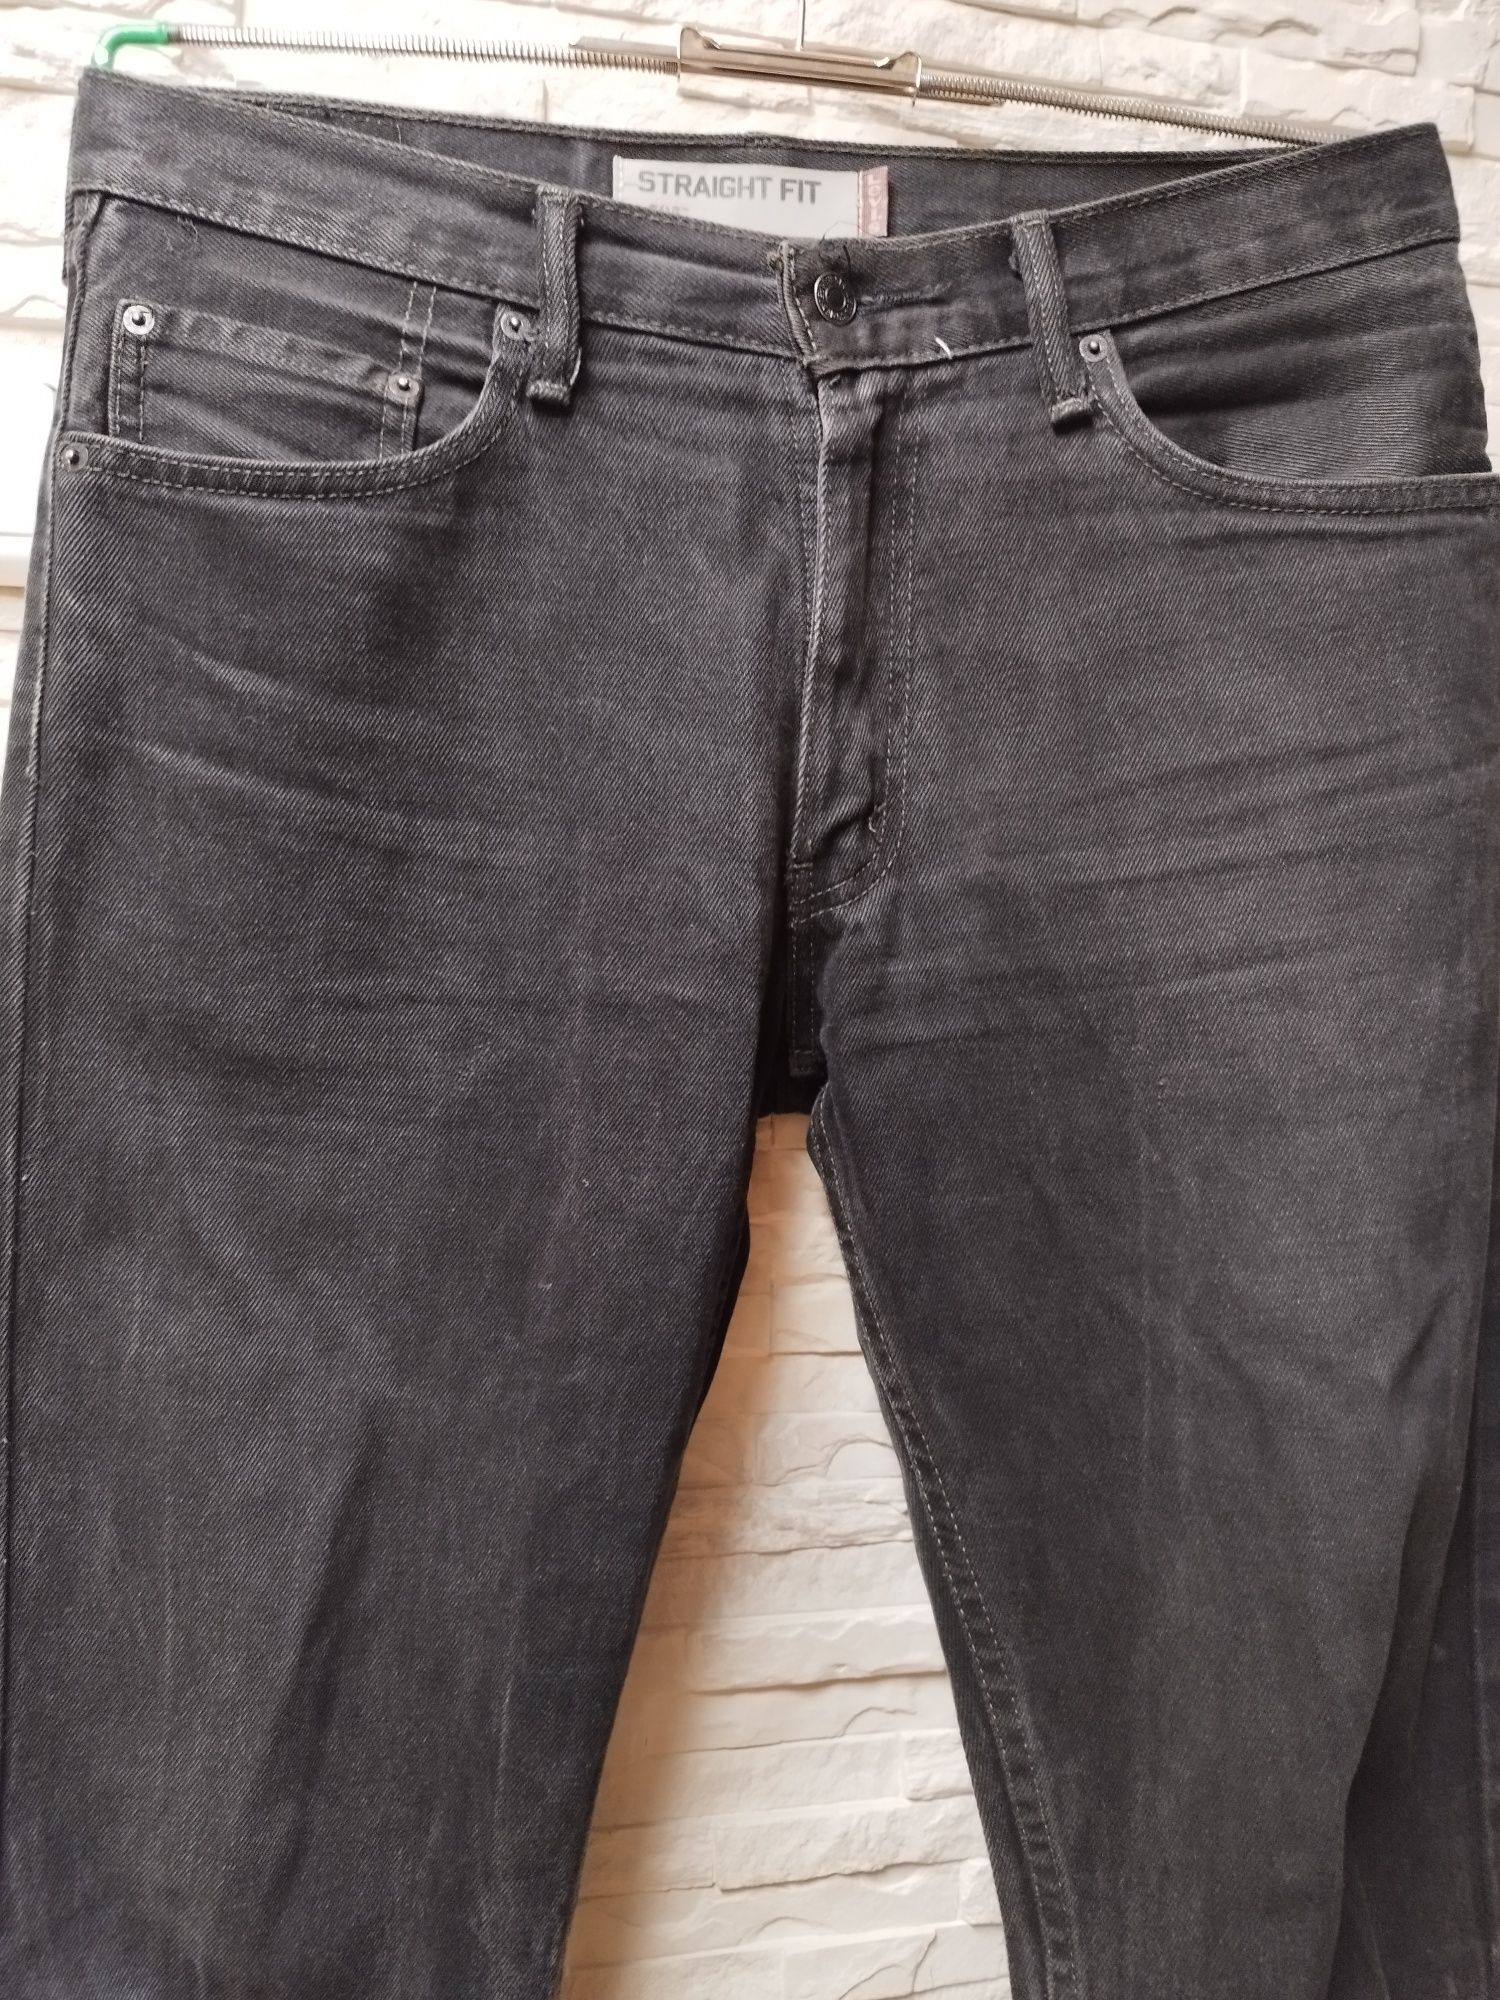 ?Spodnie Levi's Strauss,dżinsy 505 W32L34 Stright fit, czarne